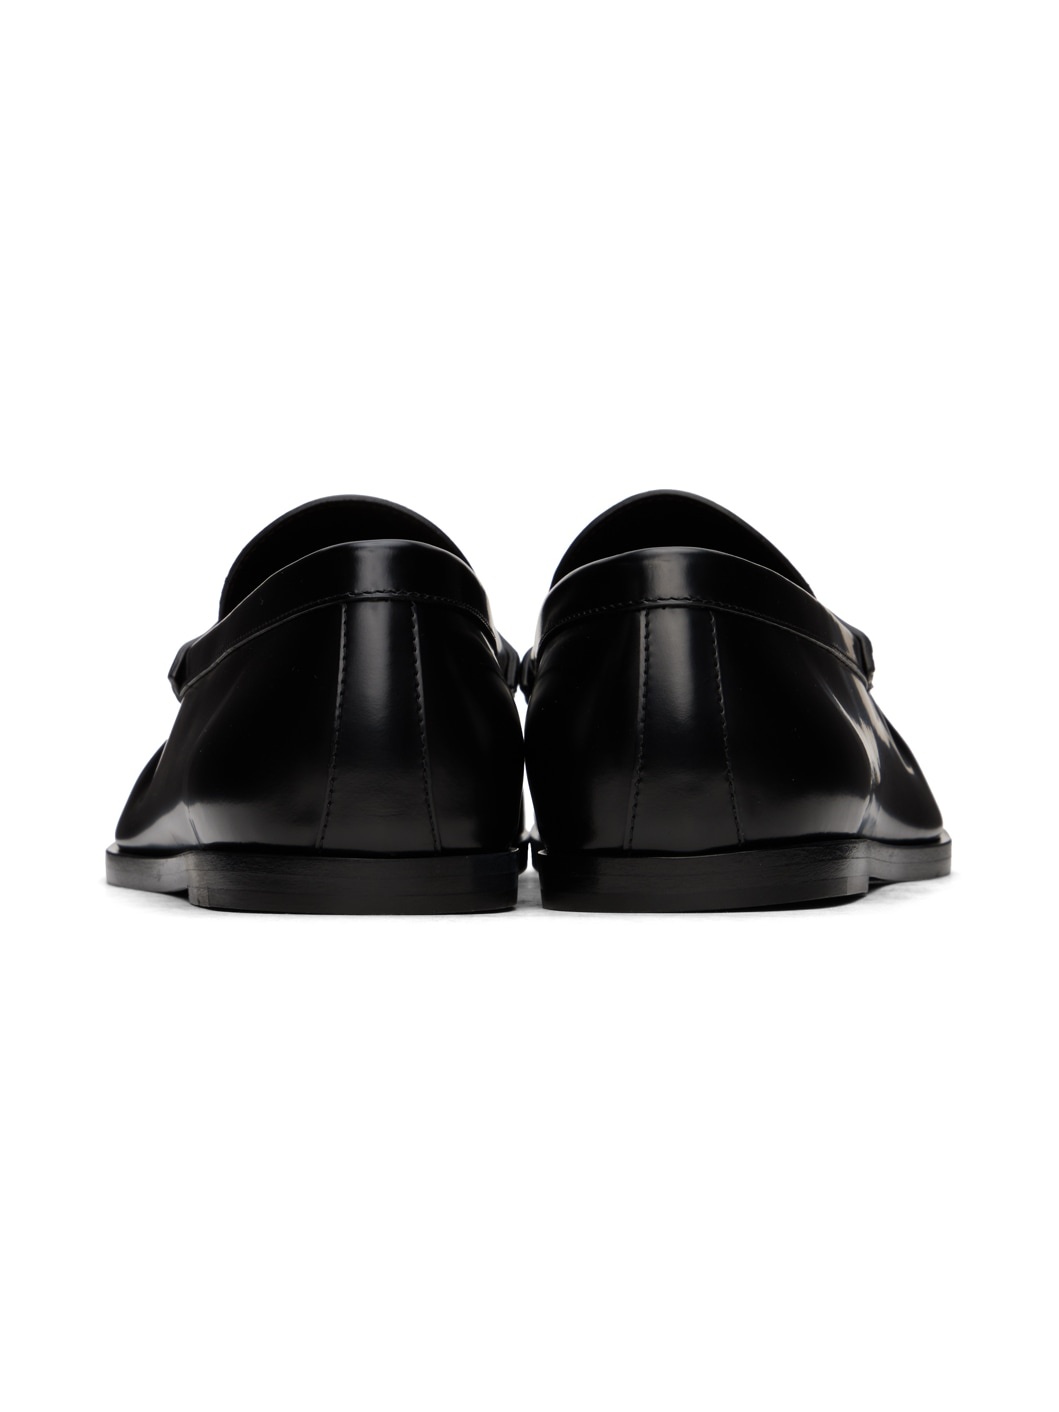 Black Tassle Loafers - 2